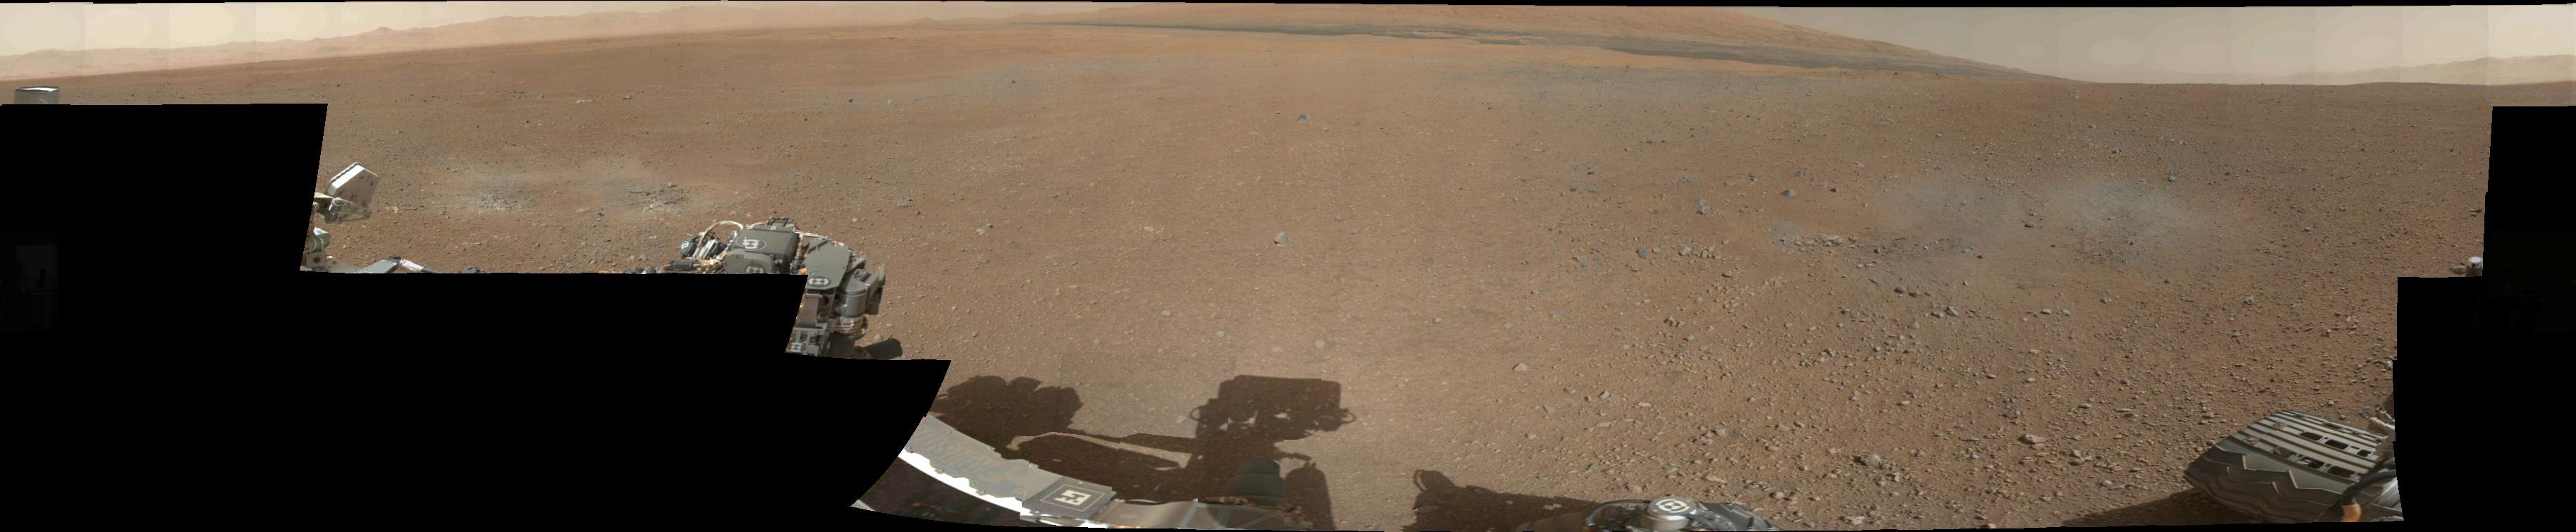 La primera panorámica de 360 grados de Curiosity a color.